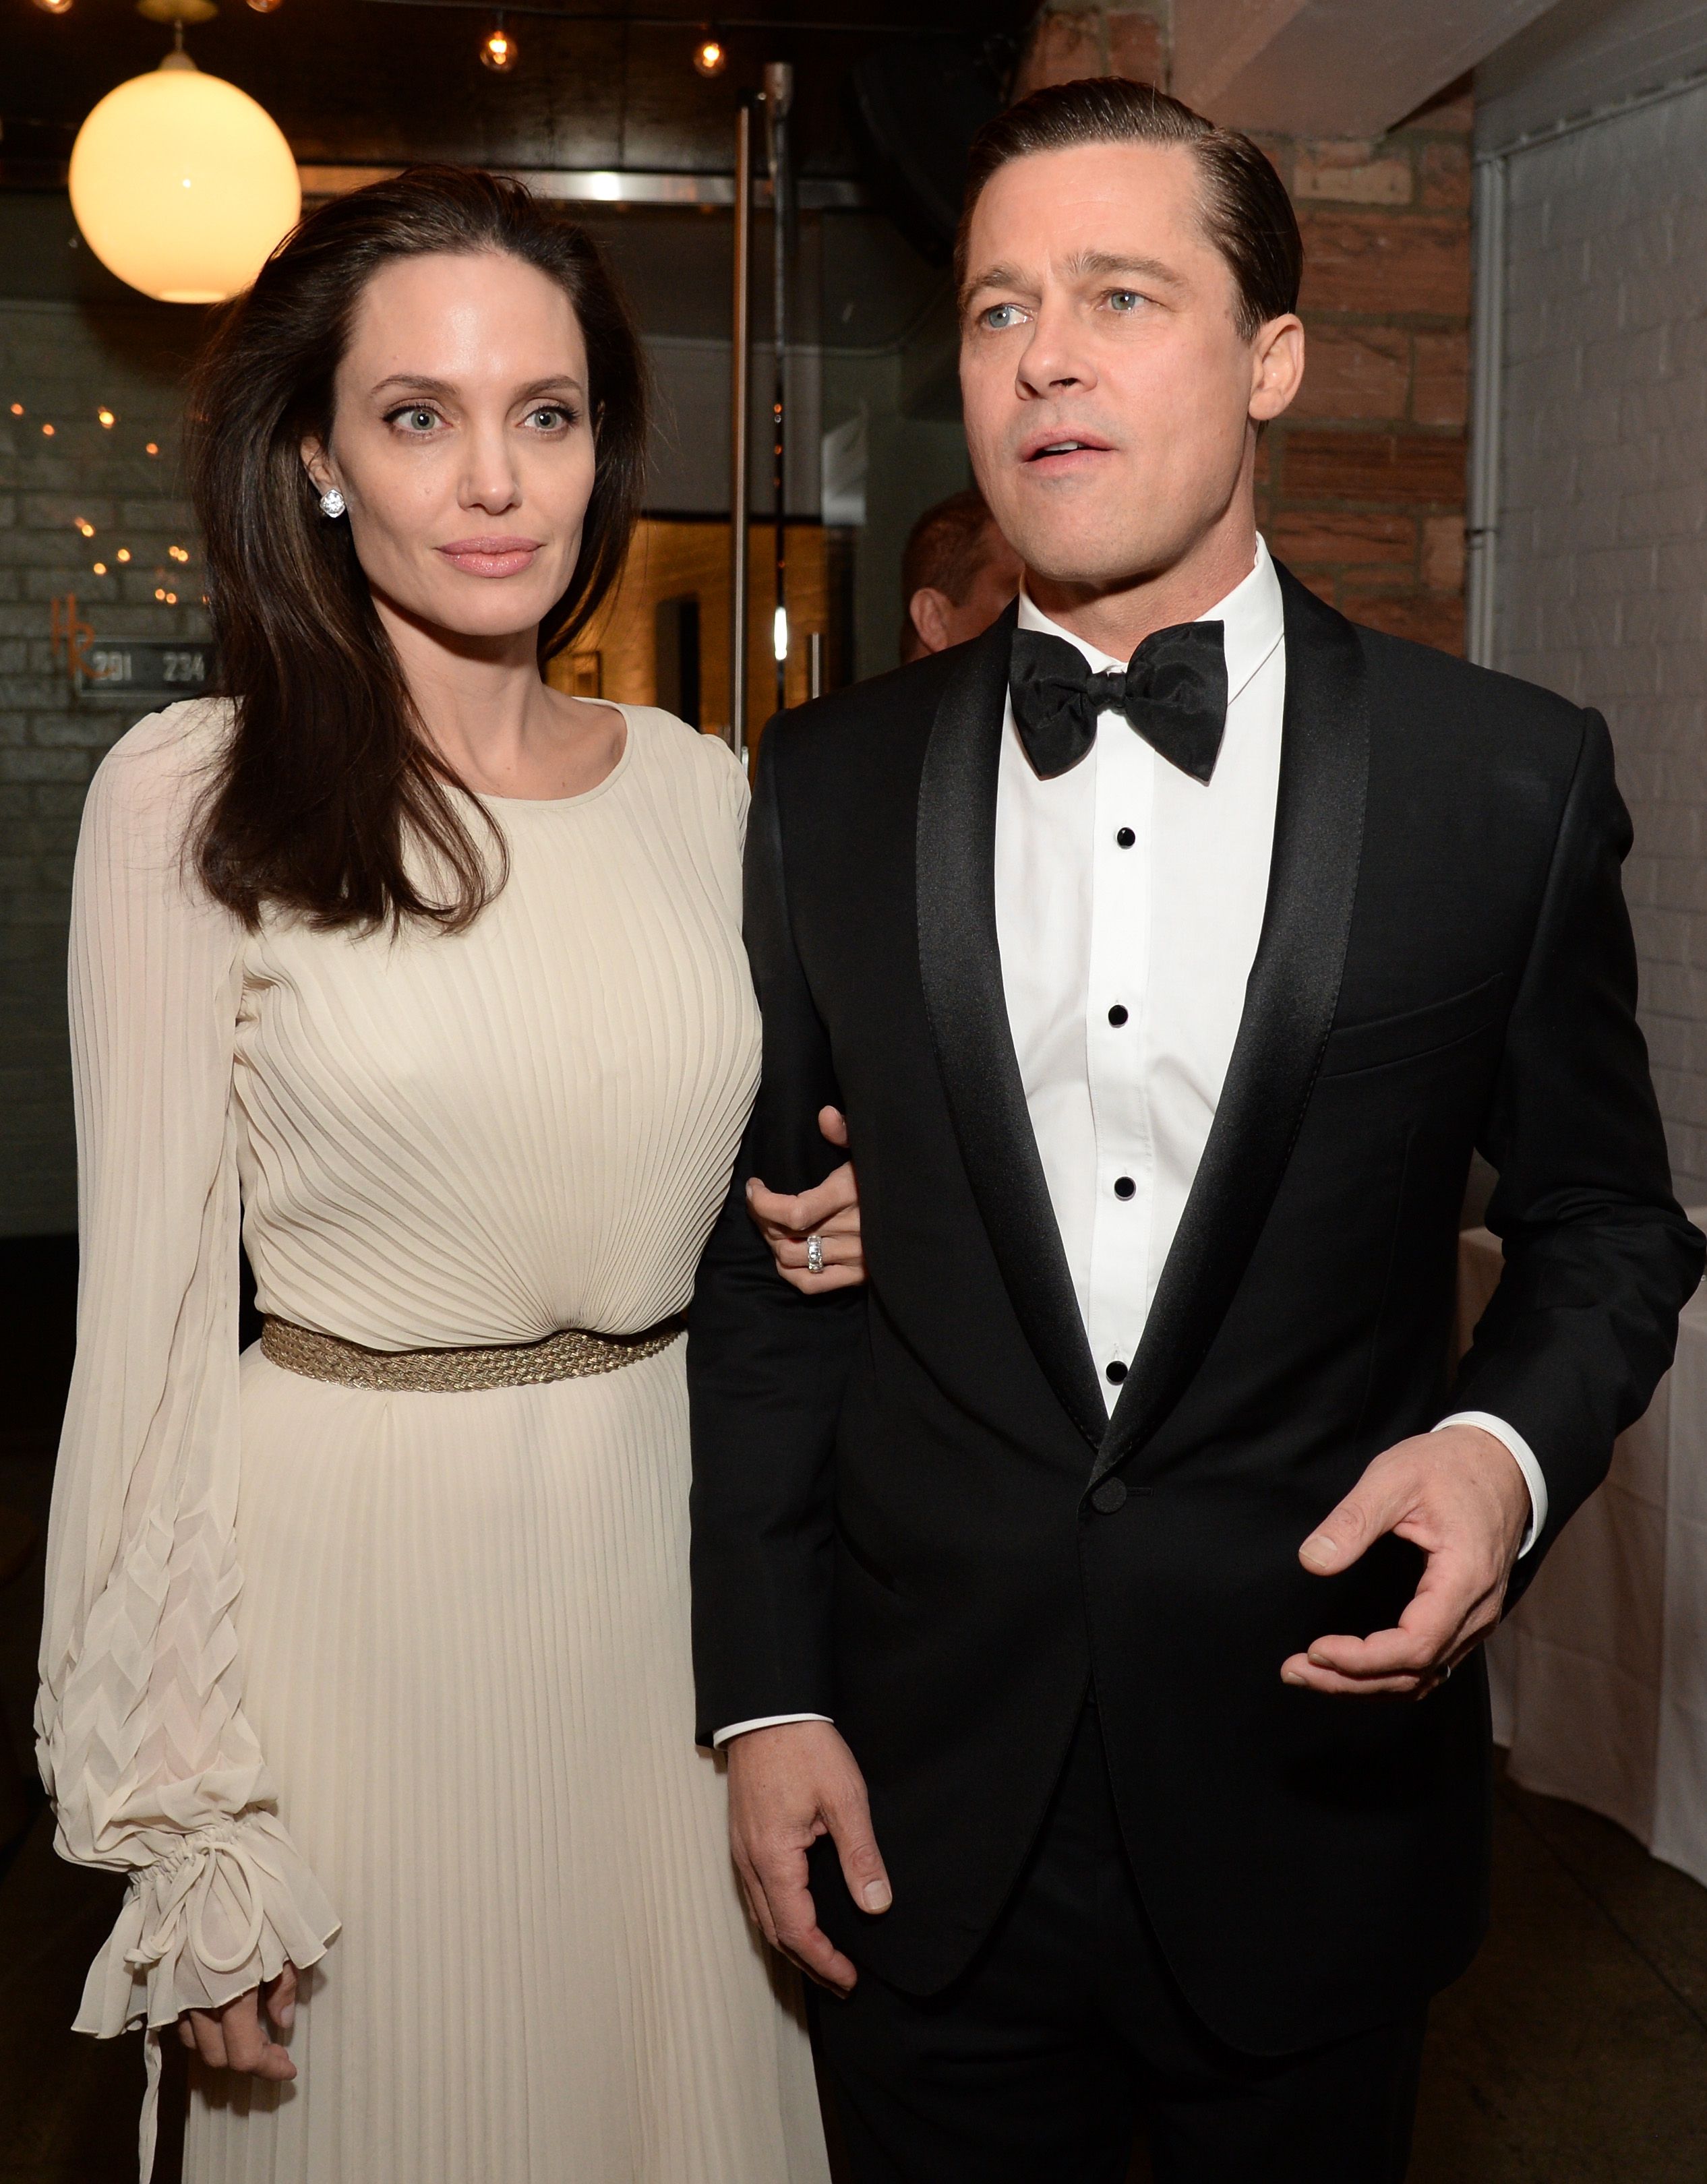 Брэд Питт на Джоли были замечены на публике вместе впервые после развода 